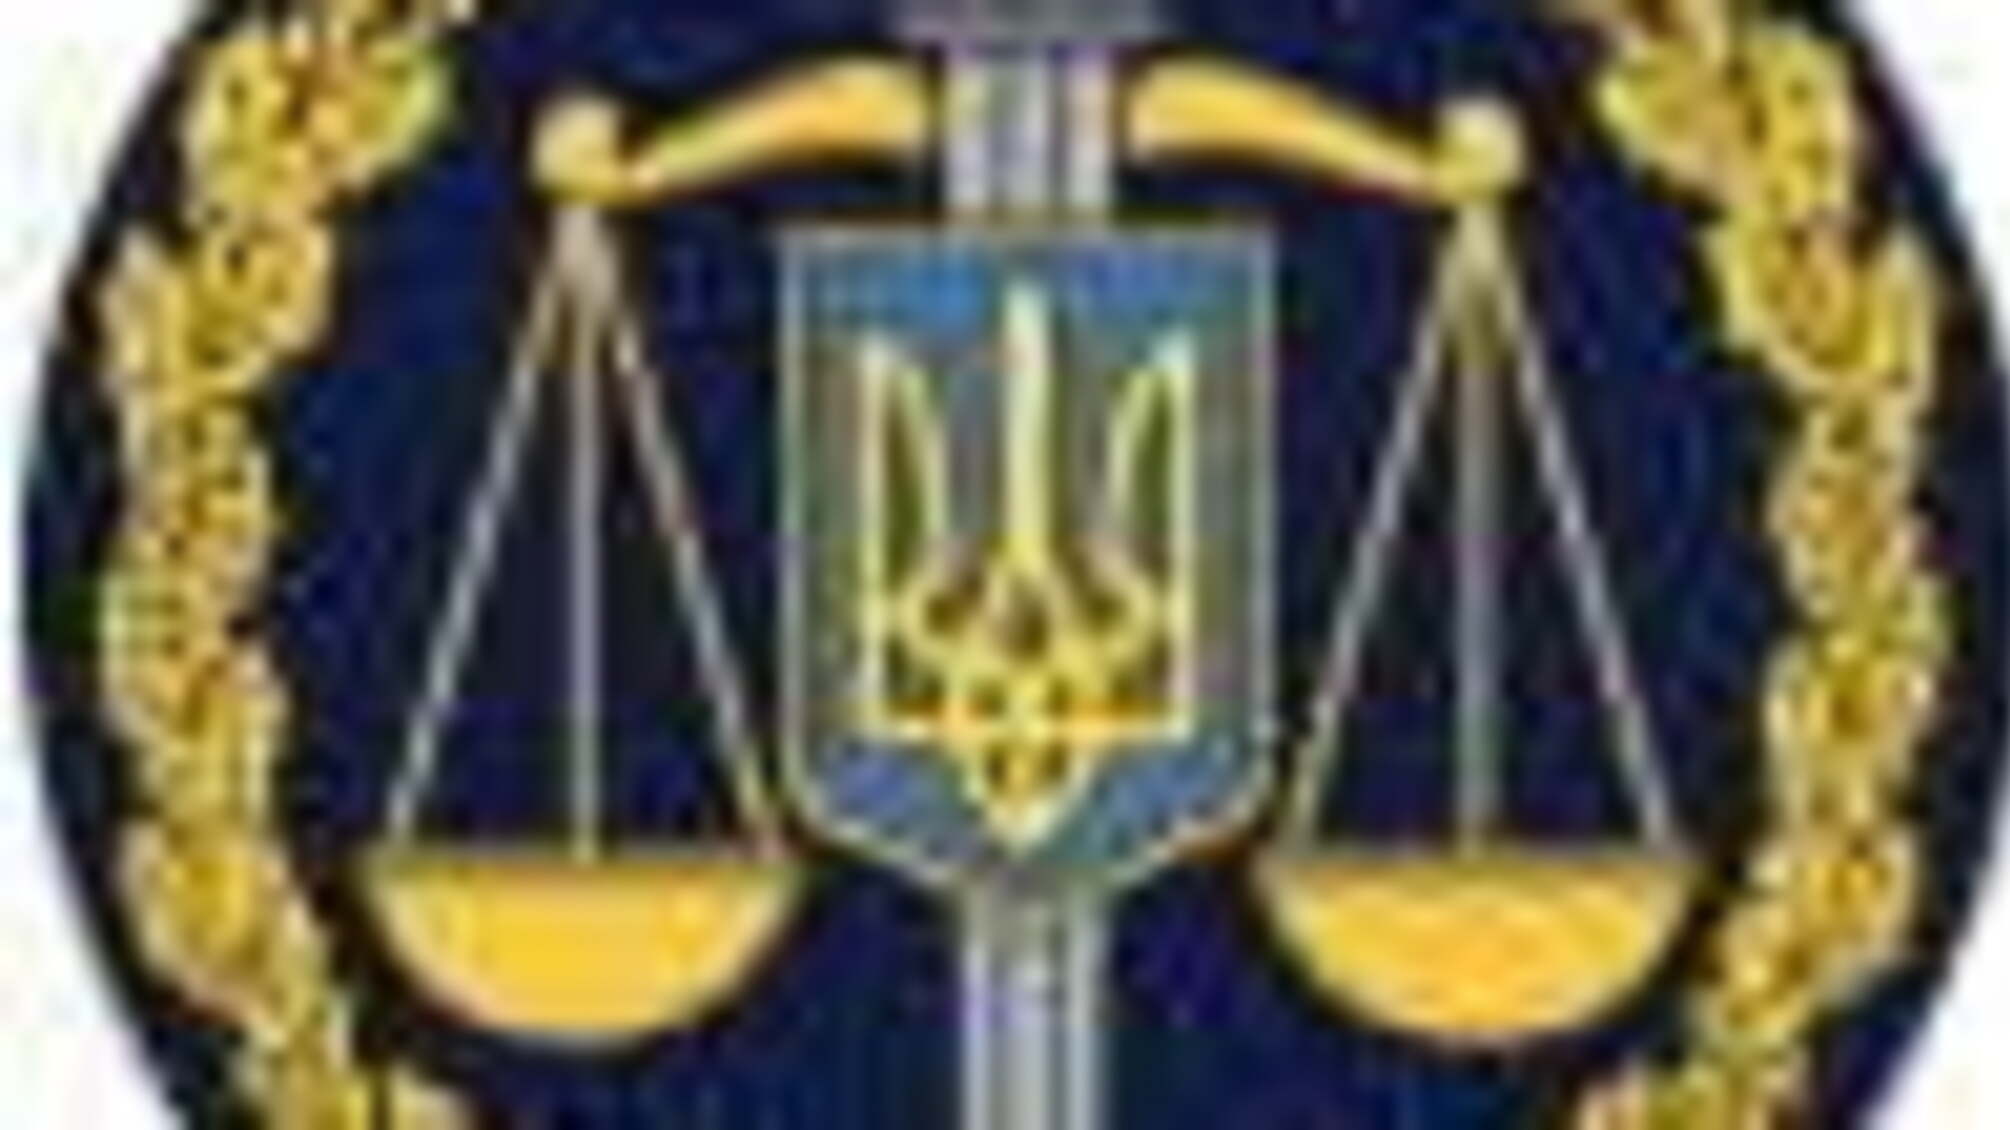 Вирок суду: 4 роки позбавлення волі за фейкові мінування адміністративних будівель Харкова (ФОТО)